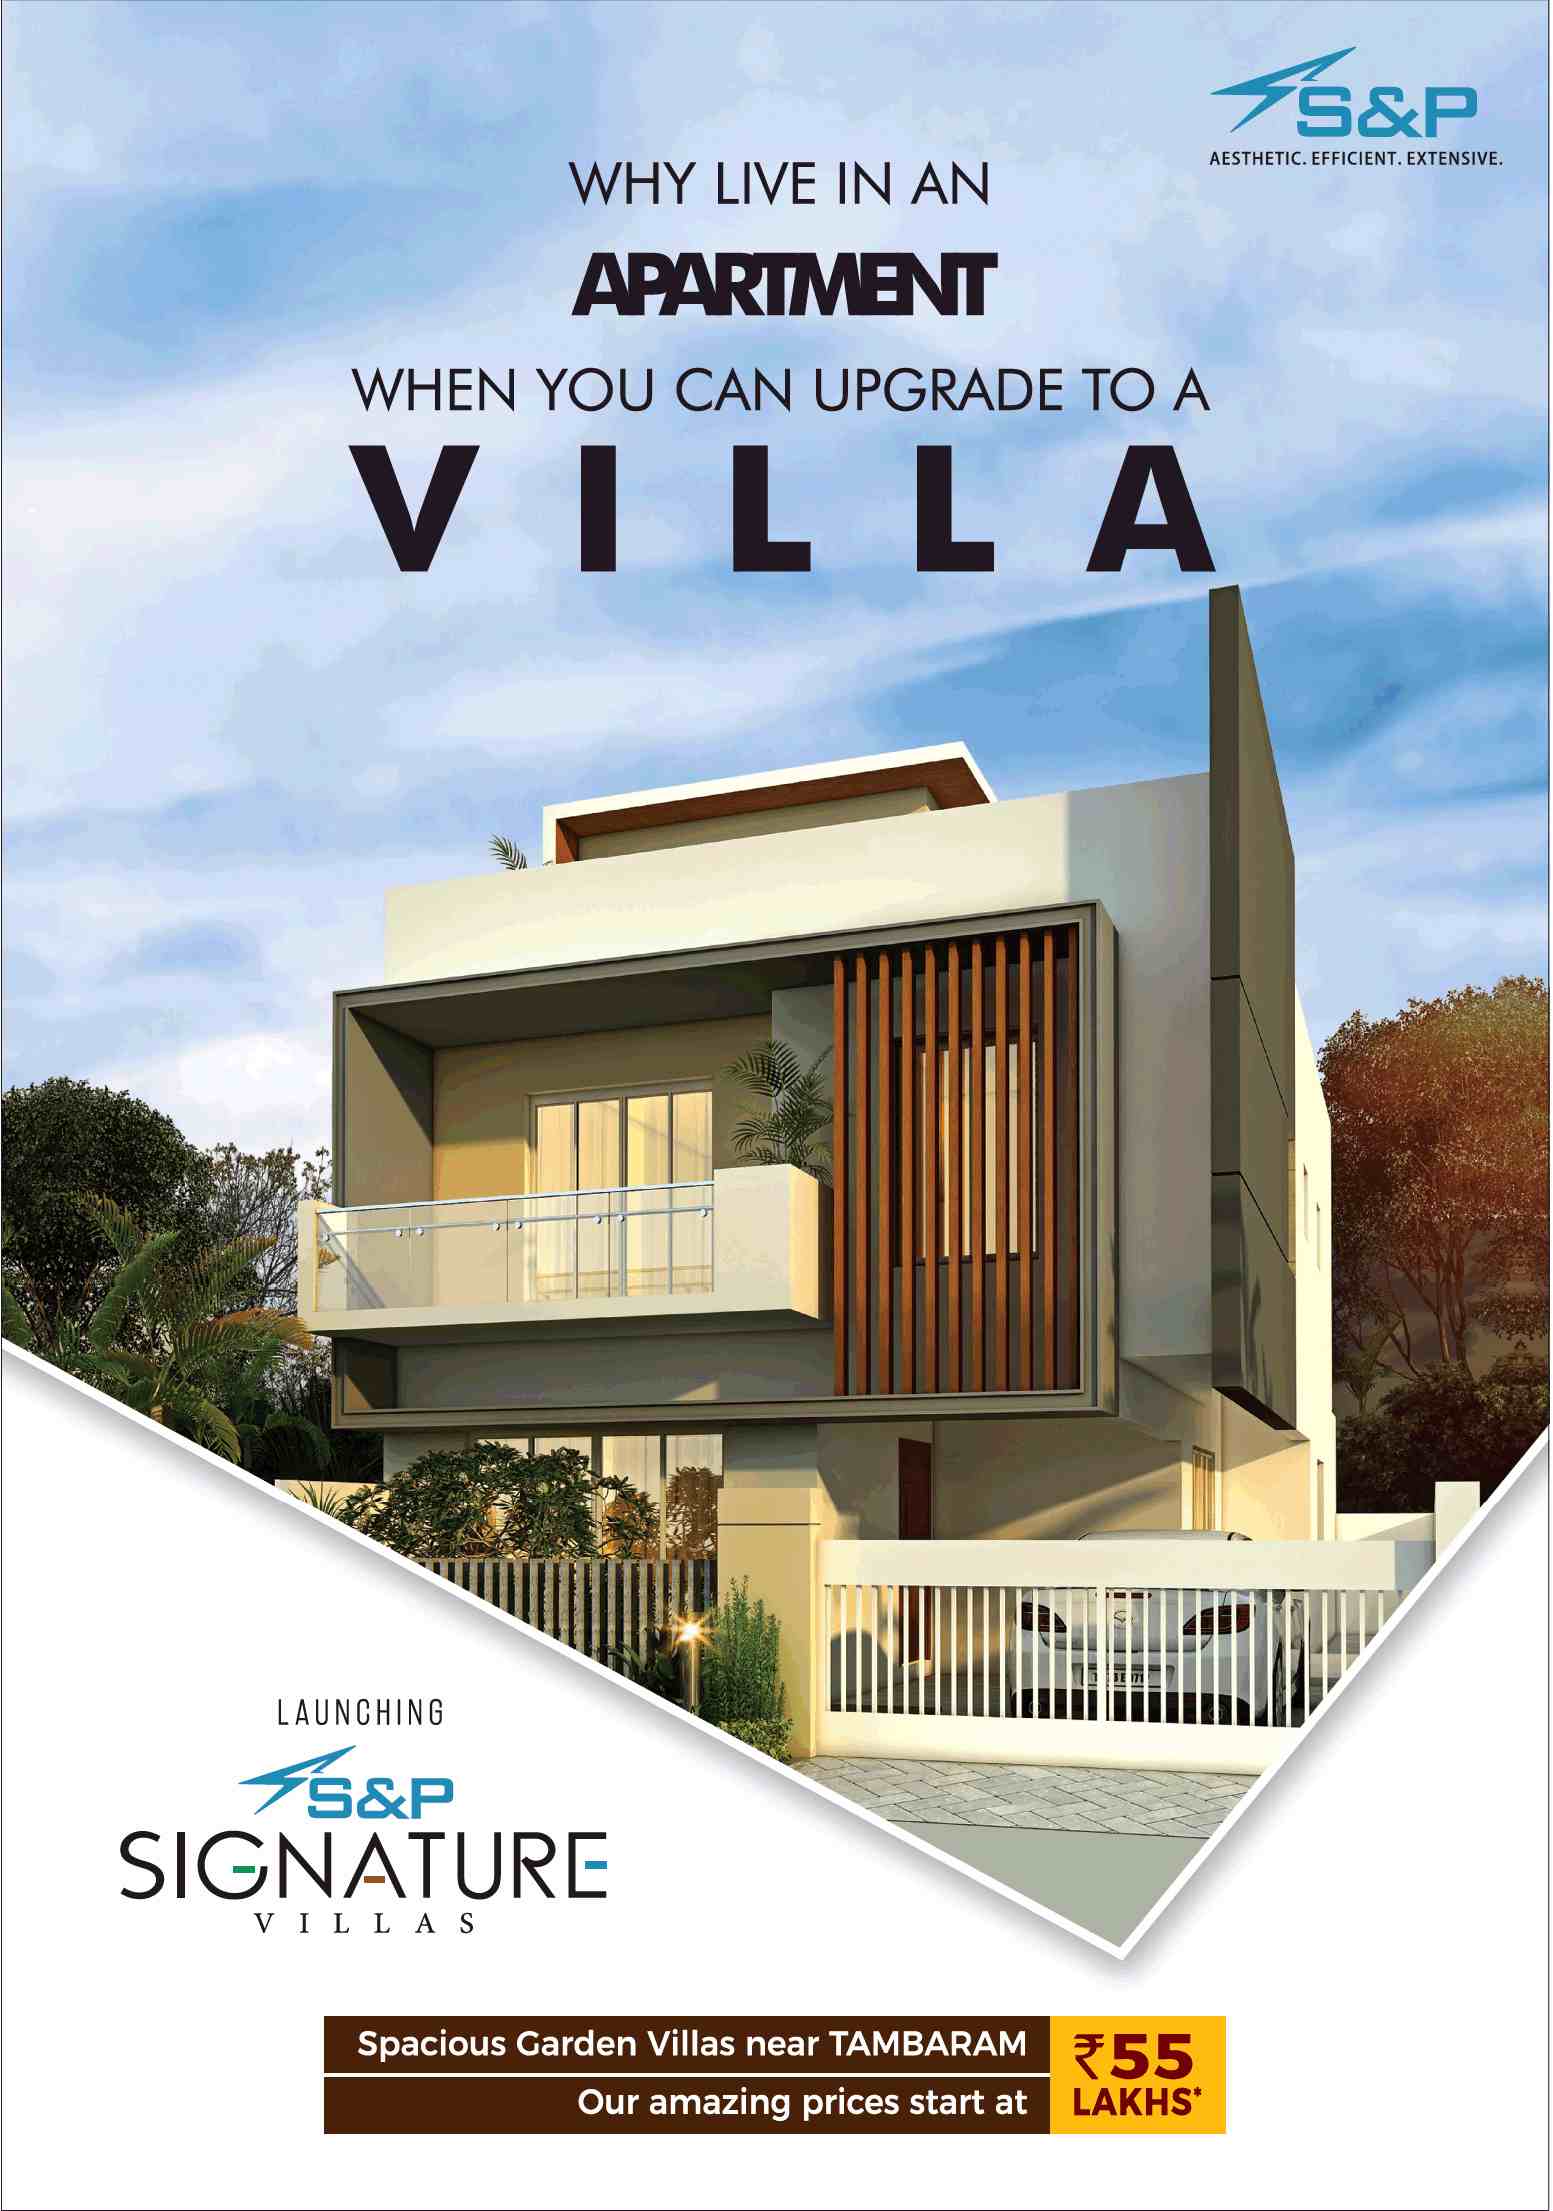 Launching S&P Signature Villas at Tambaram, Chennai